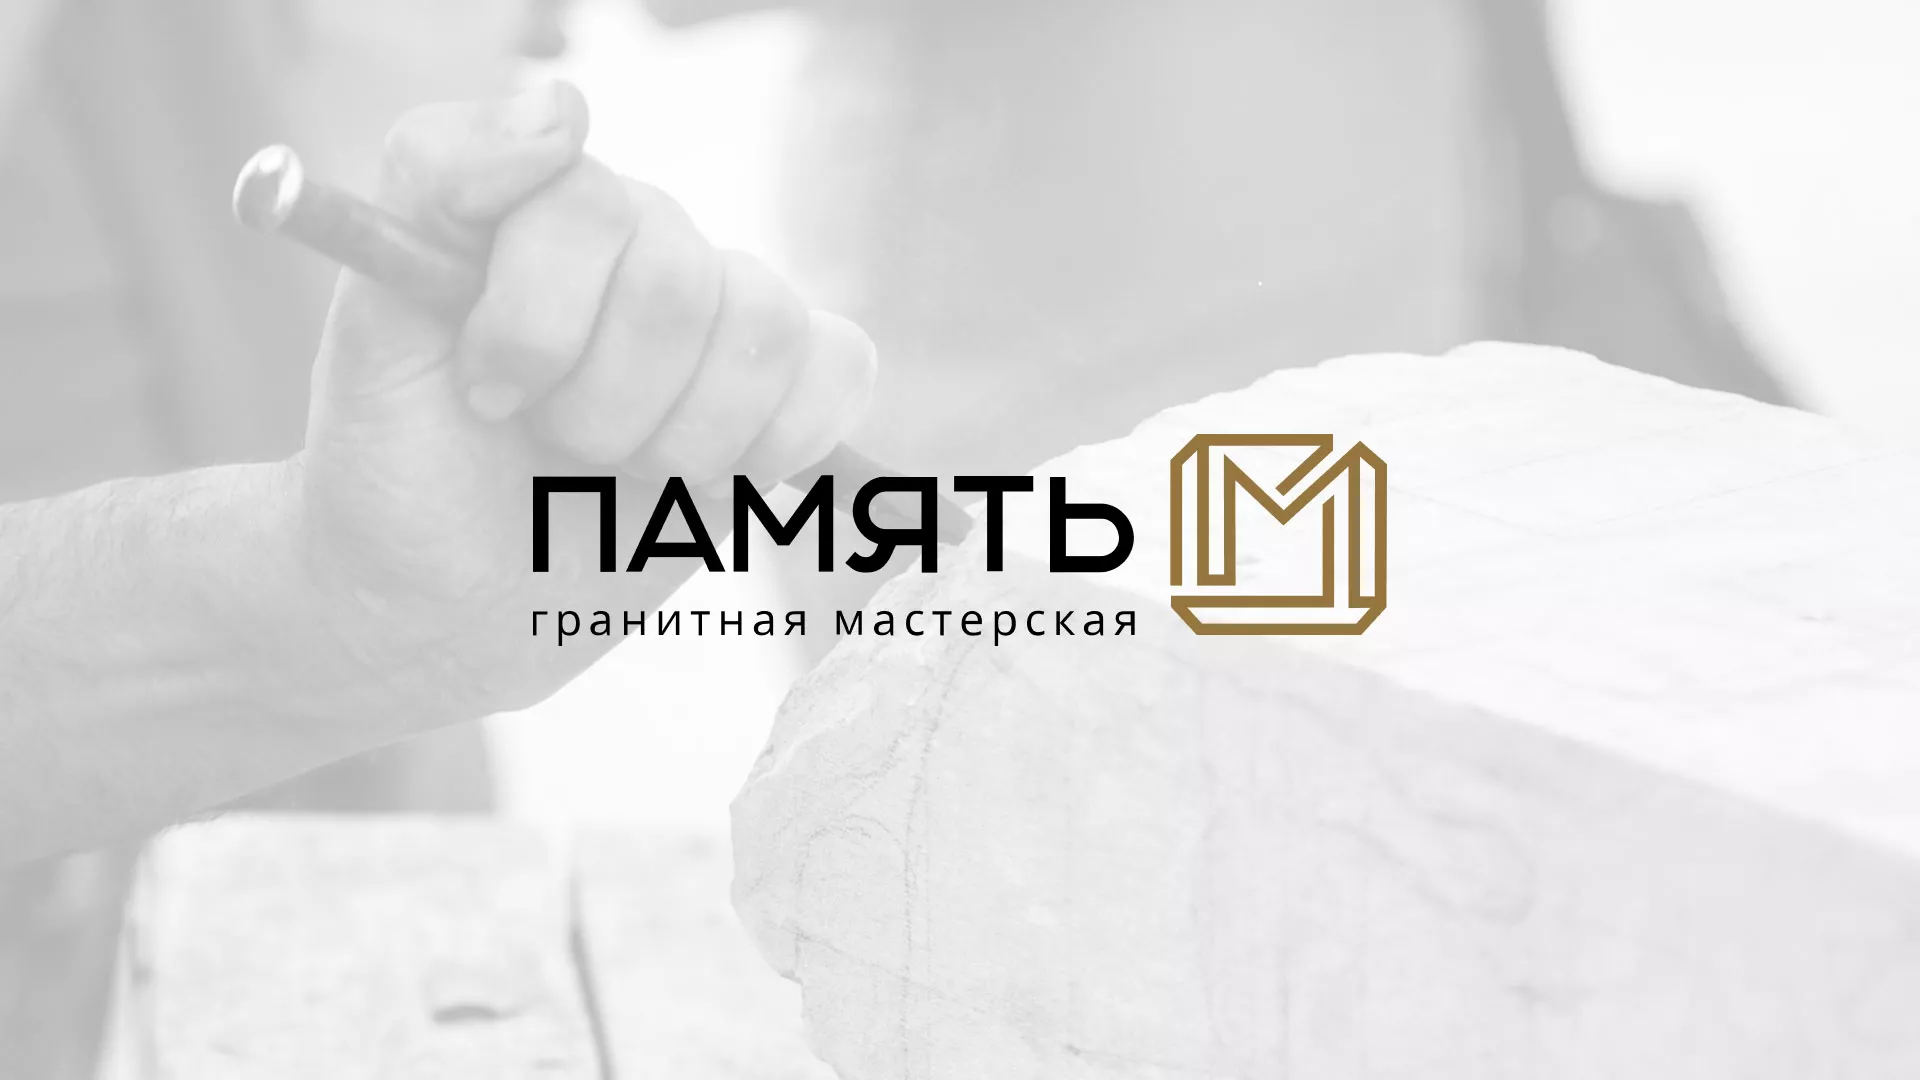 Разработка логотипа и сайта компании «Память-М» в Мамоново